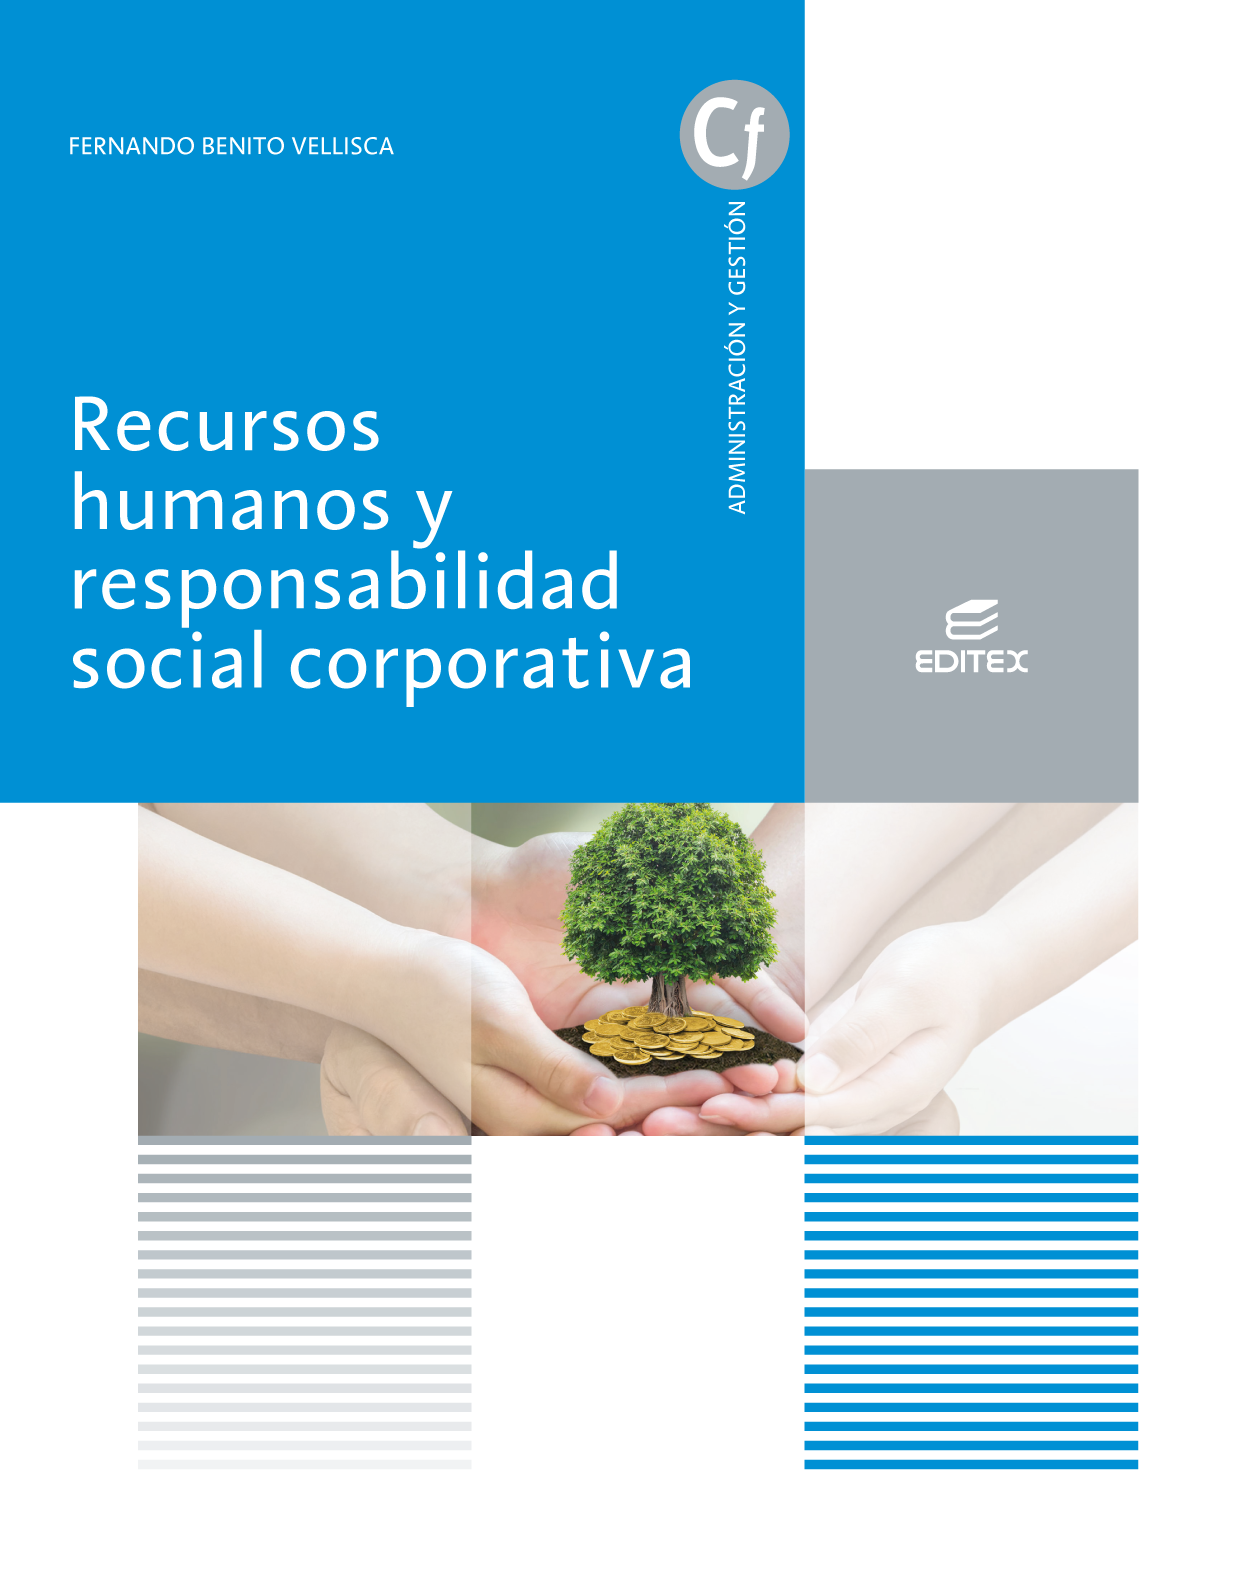 Recursos humanos y responsabilidad social corporativa (2021)